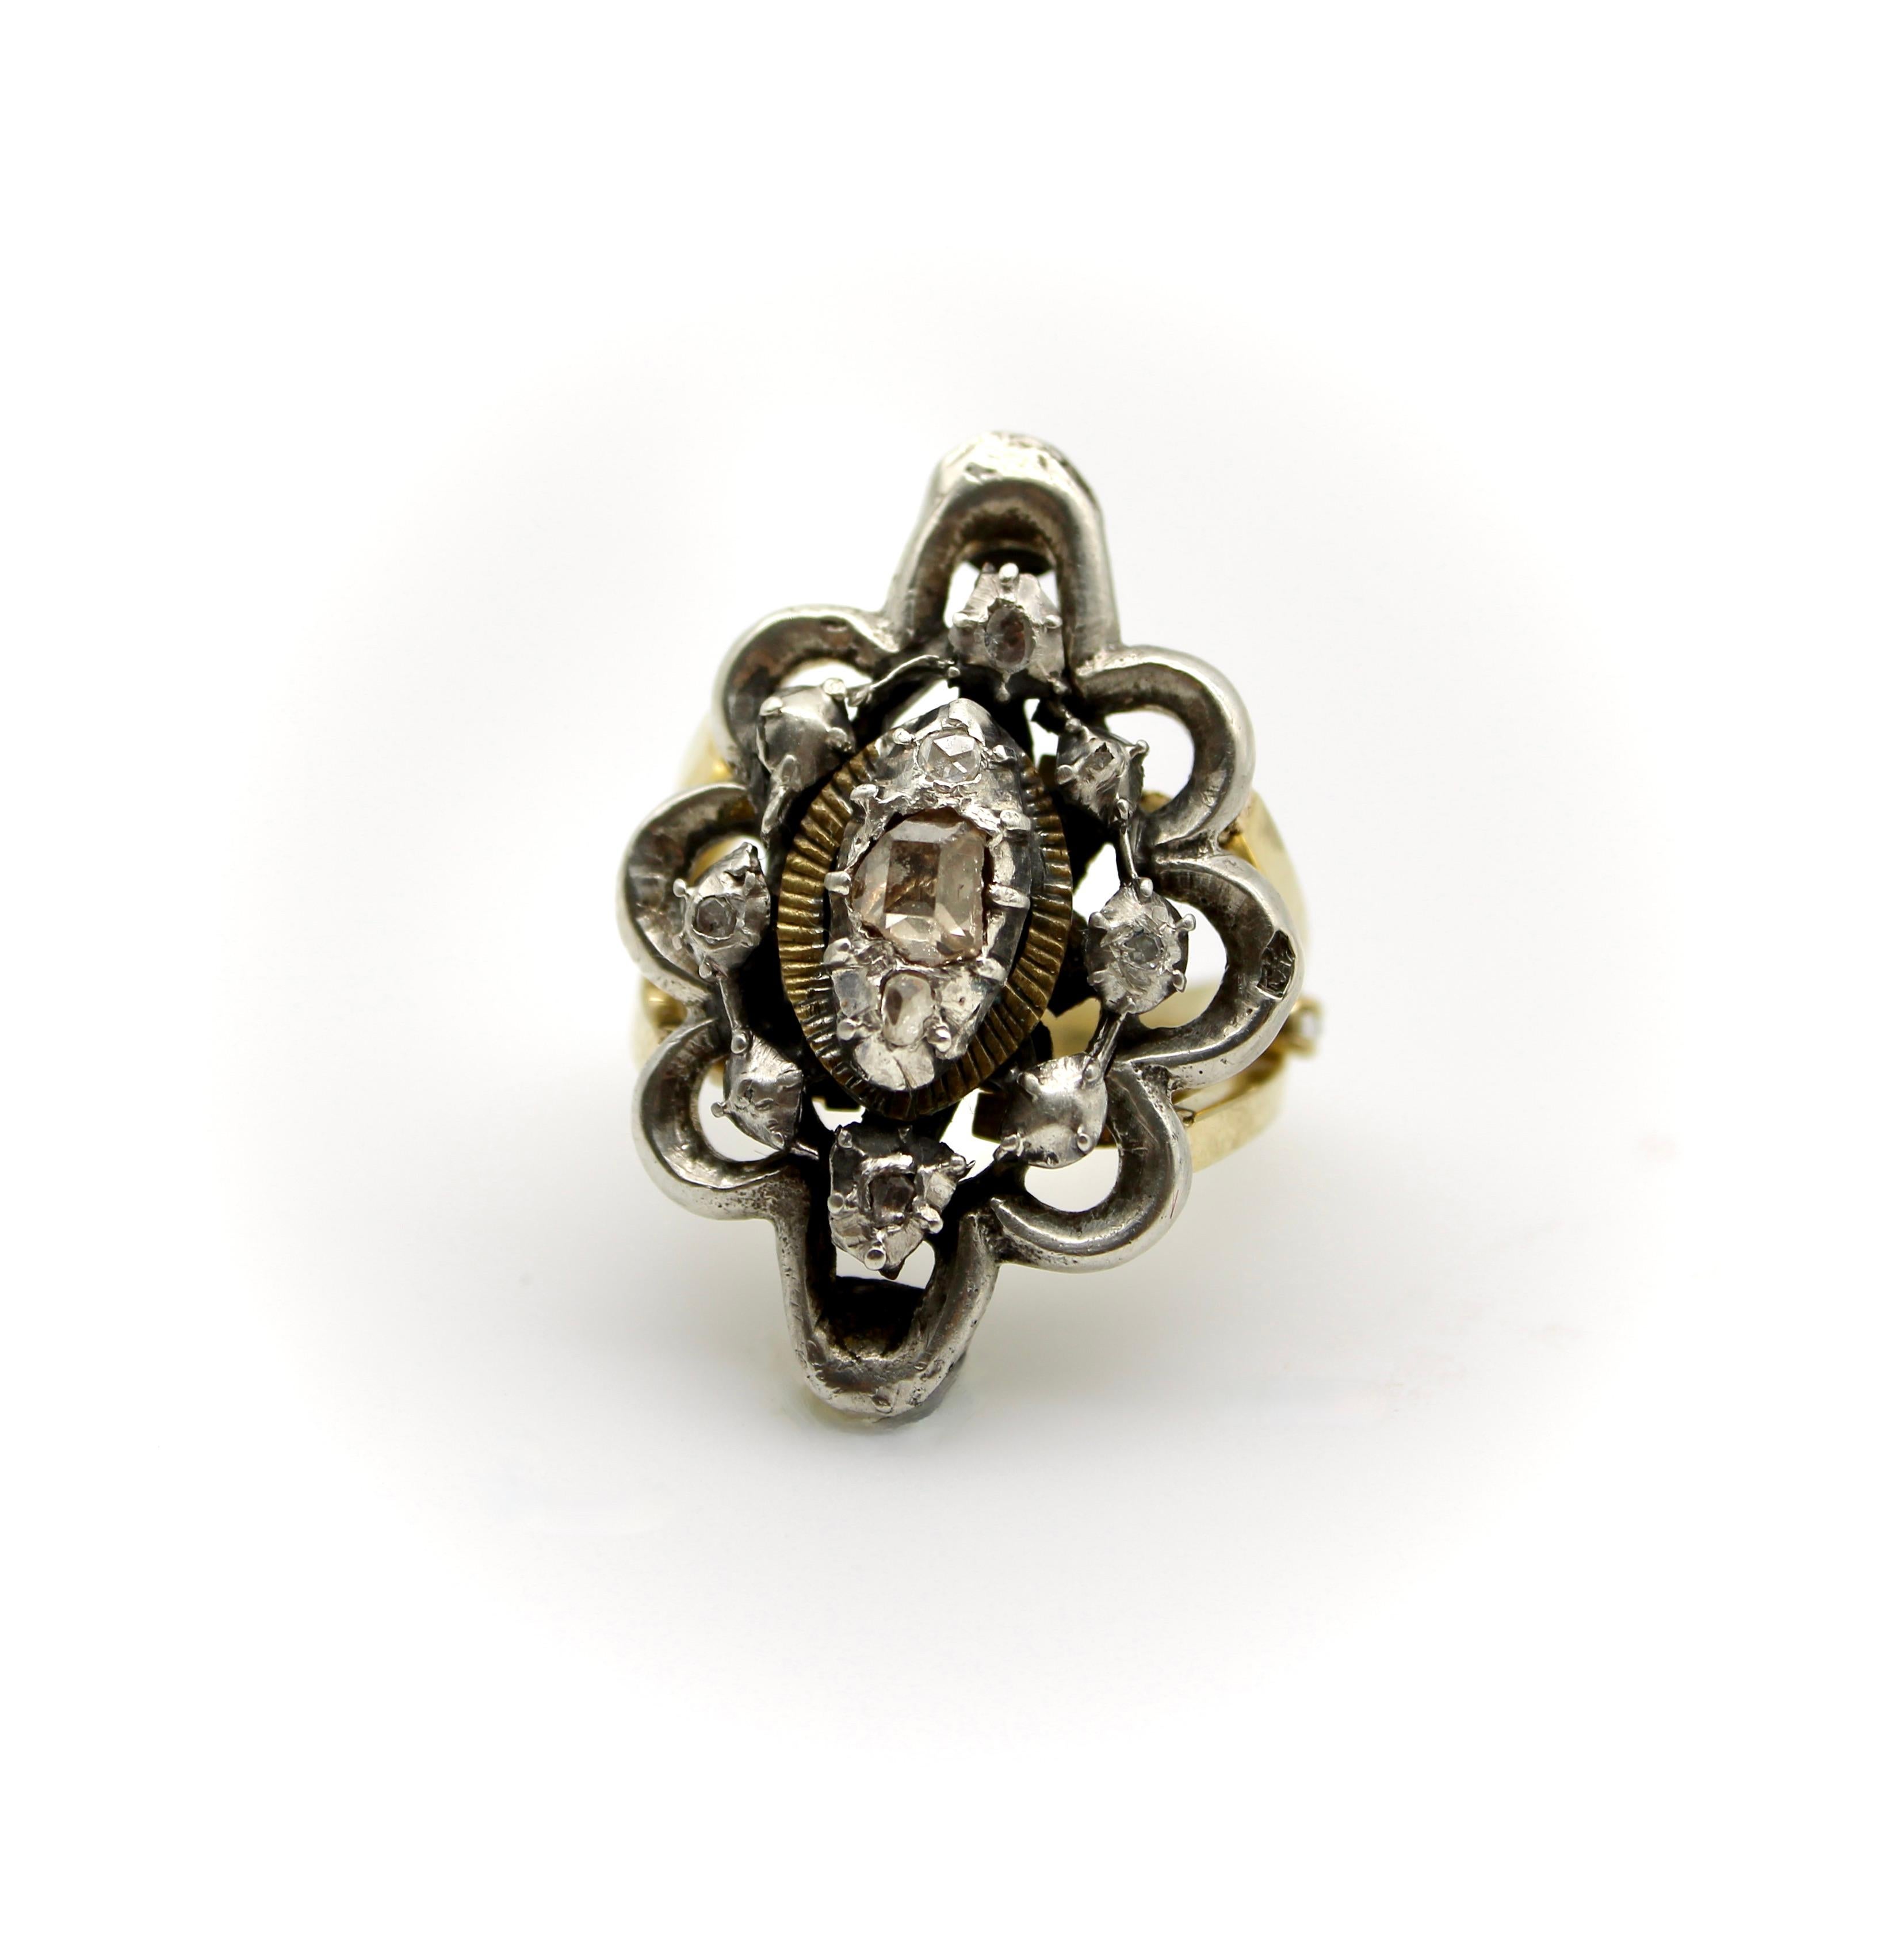 Dieser exquisite Ring hat einen georgianischen Revival Sterling Silber Diamant Blume oben, mit einem maßgeschneiderten 14k Gelbgold Band. Die Blume aus Sterlingsilber hat einen wunderschönen Diamanten im Tafelschliff (flache Spitze), der in der